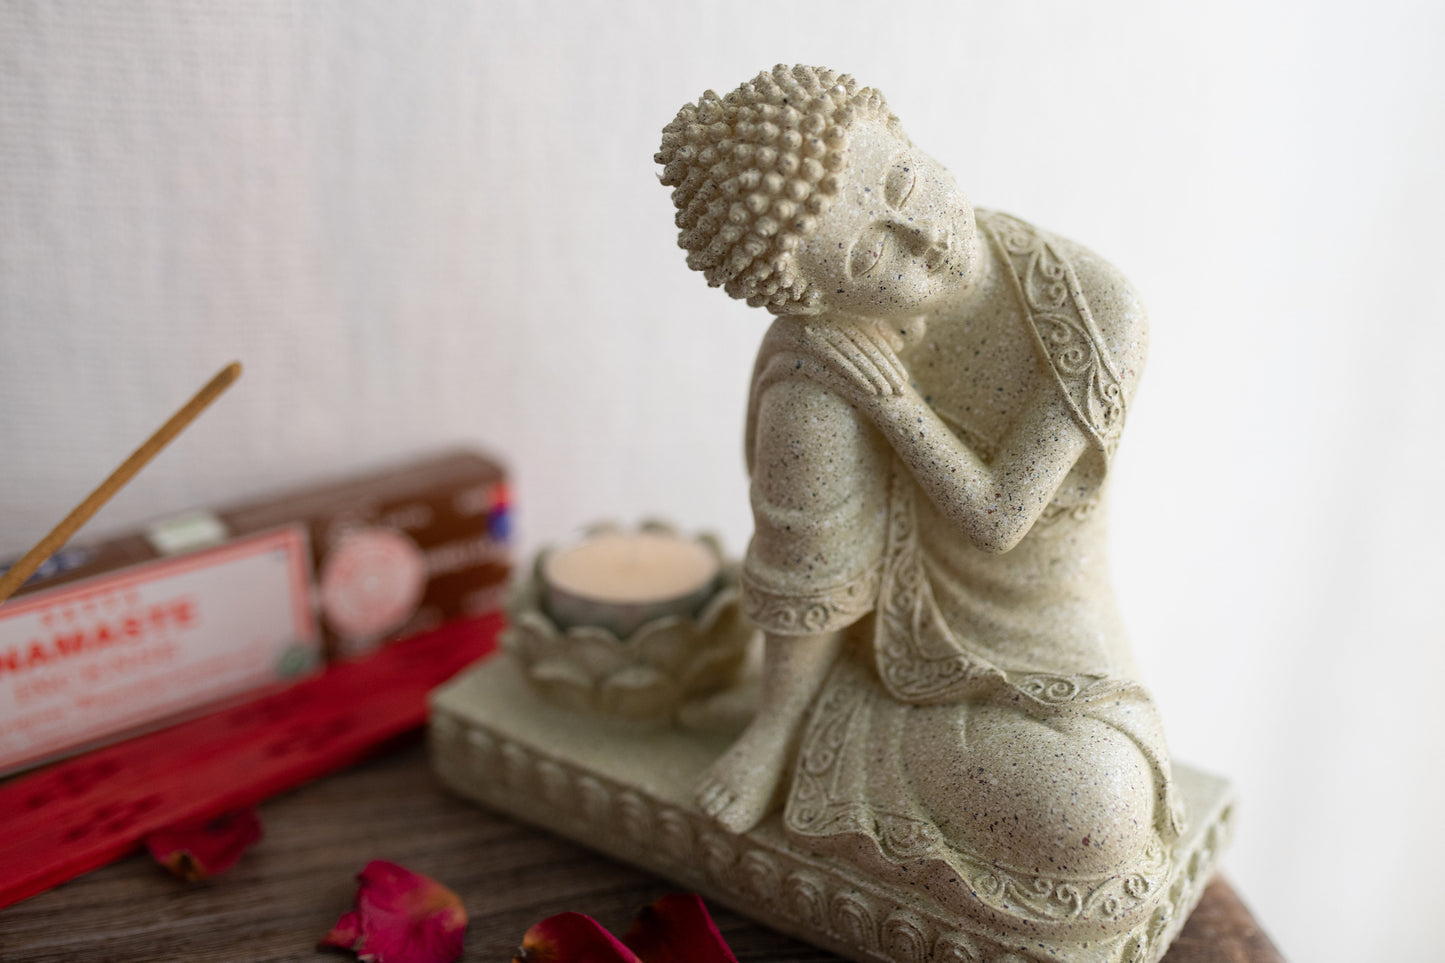 Ruhender Buddha & Jasmin Teelicht als spirituelle Deko - Kreiere deinen wunderschönen Altar und Kraftplatz für Rituale, Zeremonien und Spiritualität